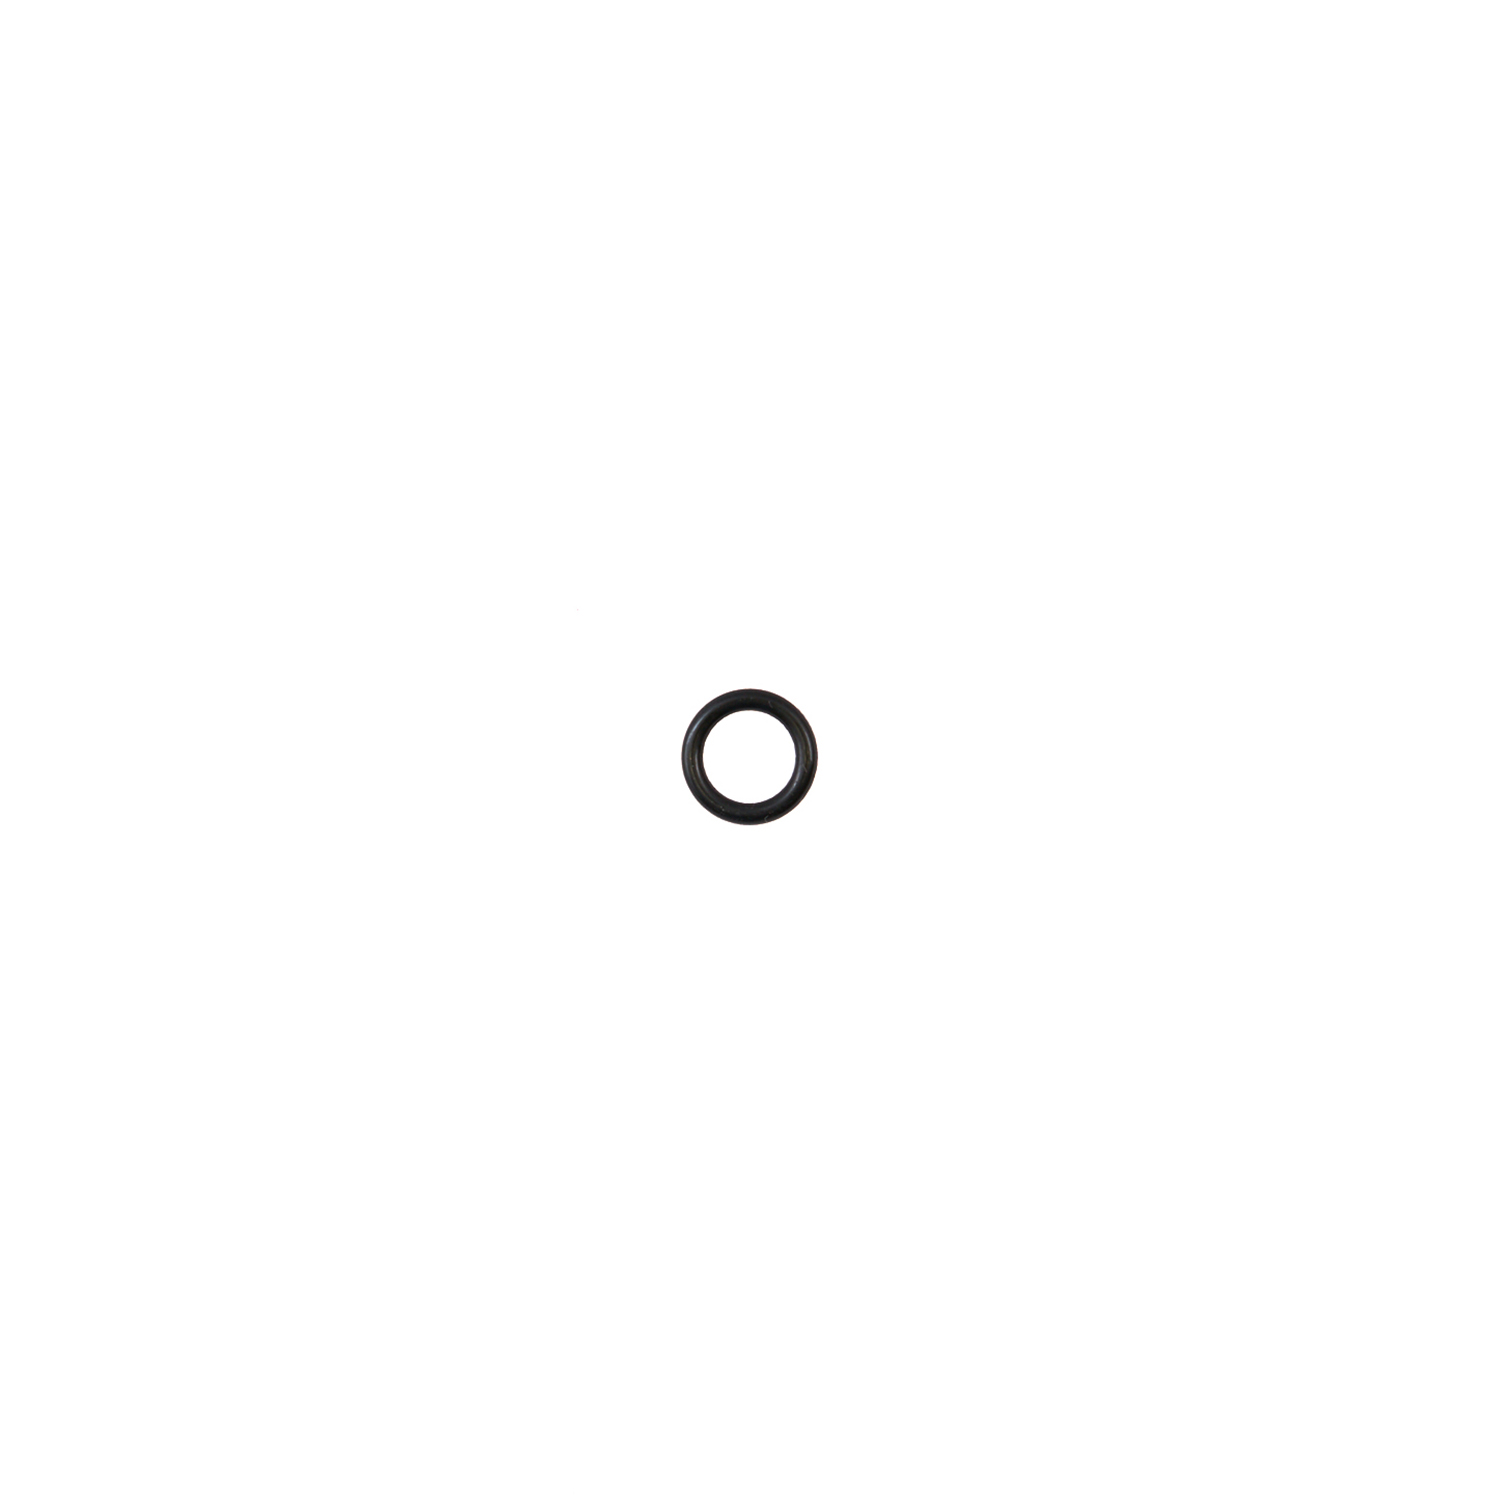 Кольцо резиновое 7.5*1.8 ( O-ring7.5*1.8 ) RT-5275 поз.6